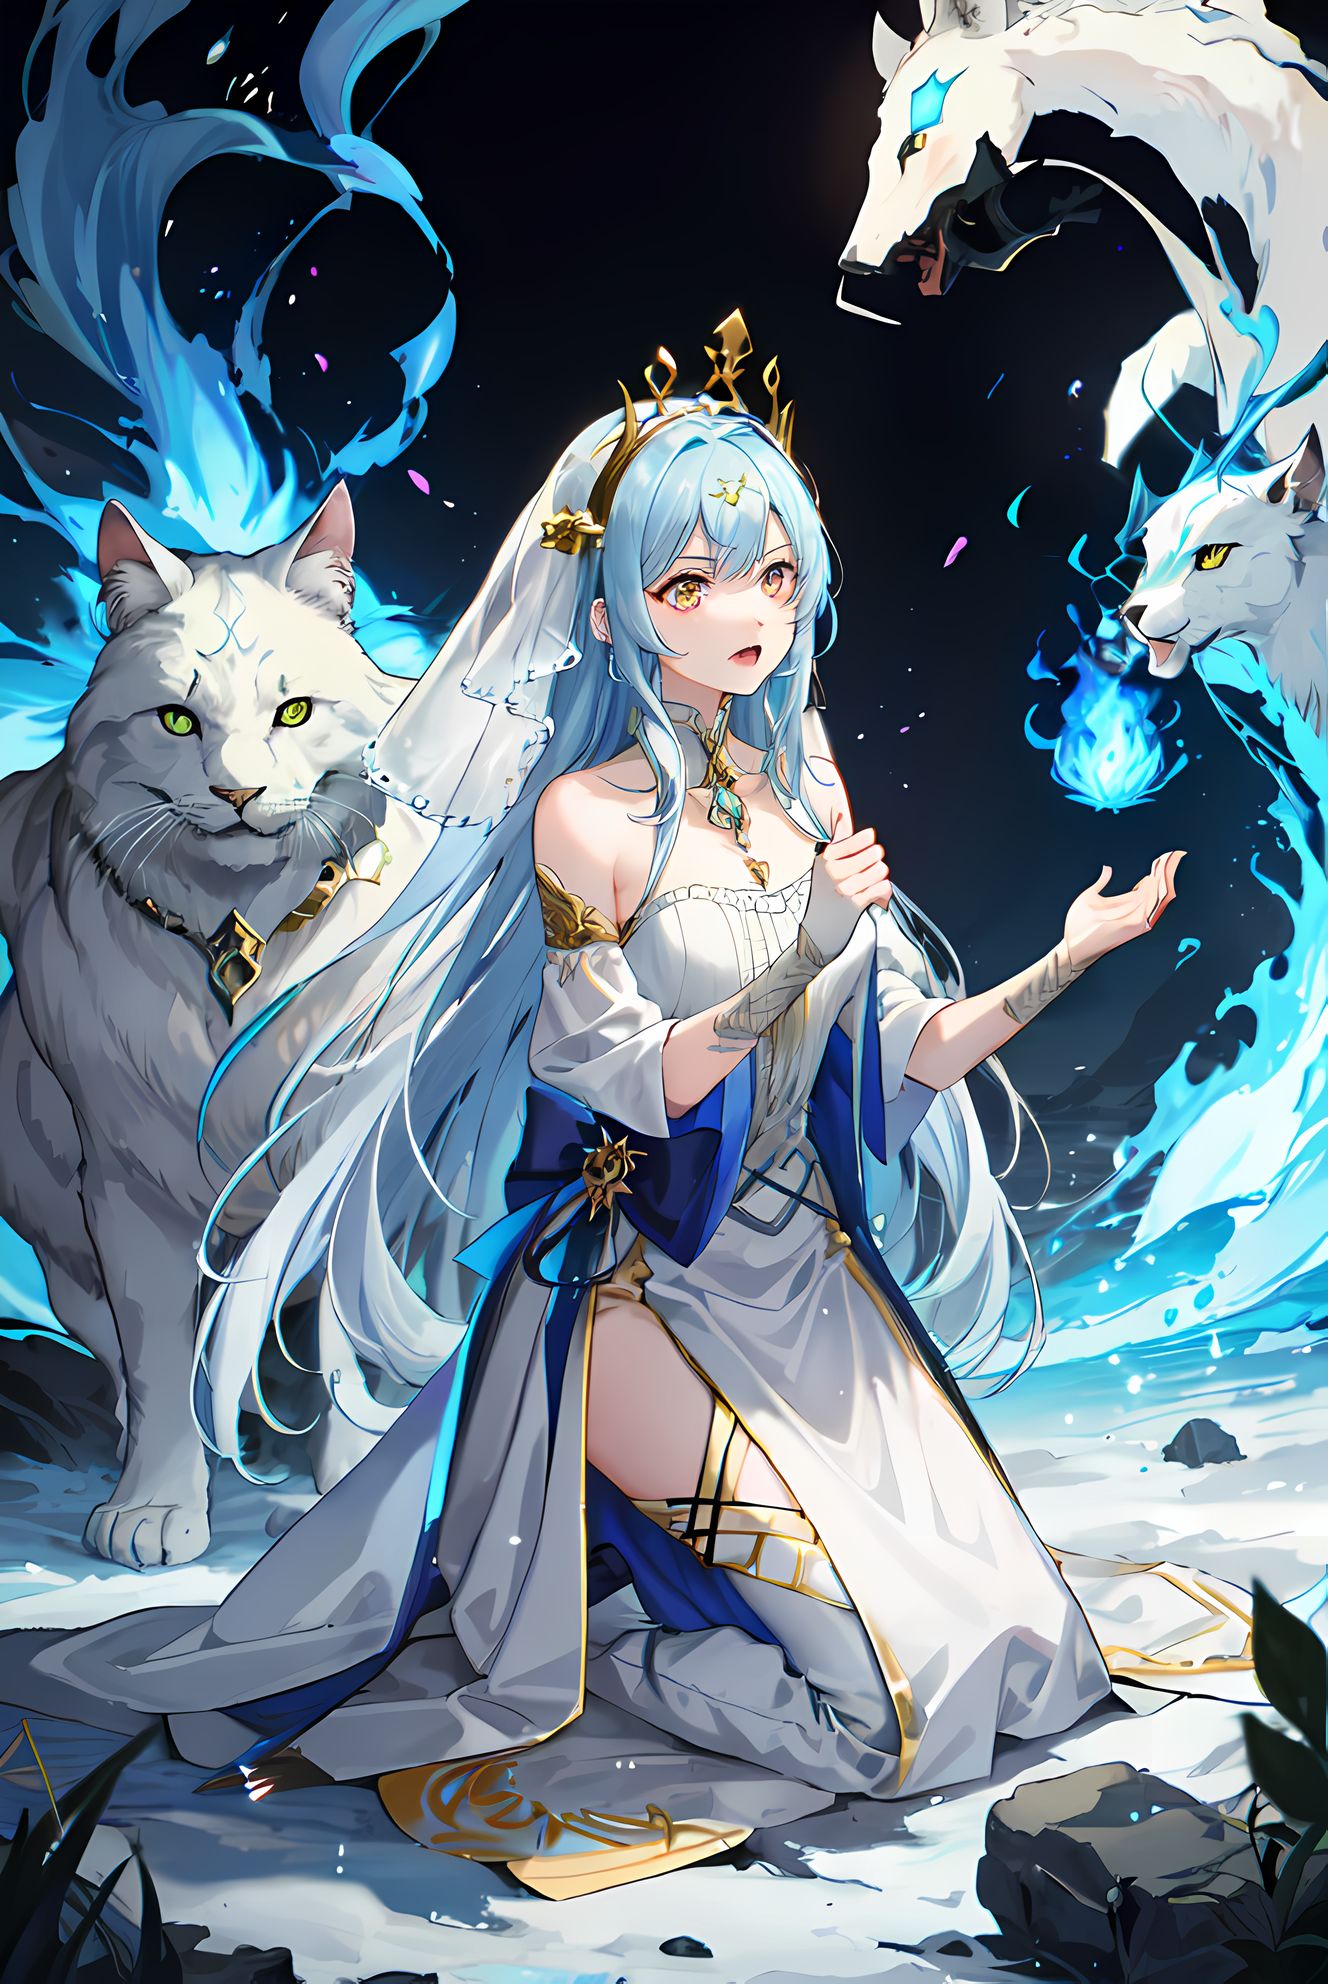 龙猫女孩戴项链，蓝色长发穿着裙子跪在水边，她的黄色眼睛中透着动物的气息，身后凝聚出一只火红的狼和一只蓝色龙，美轮美奂的画面。